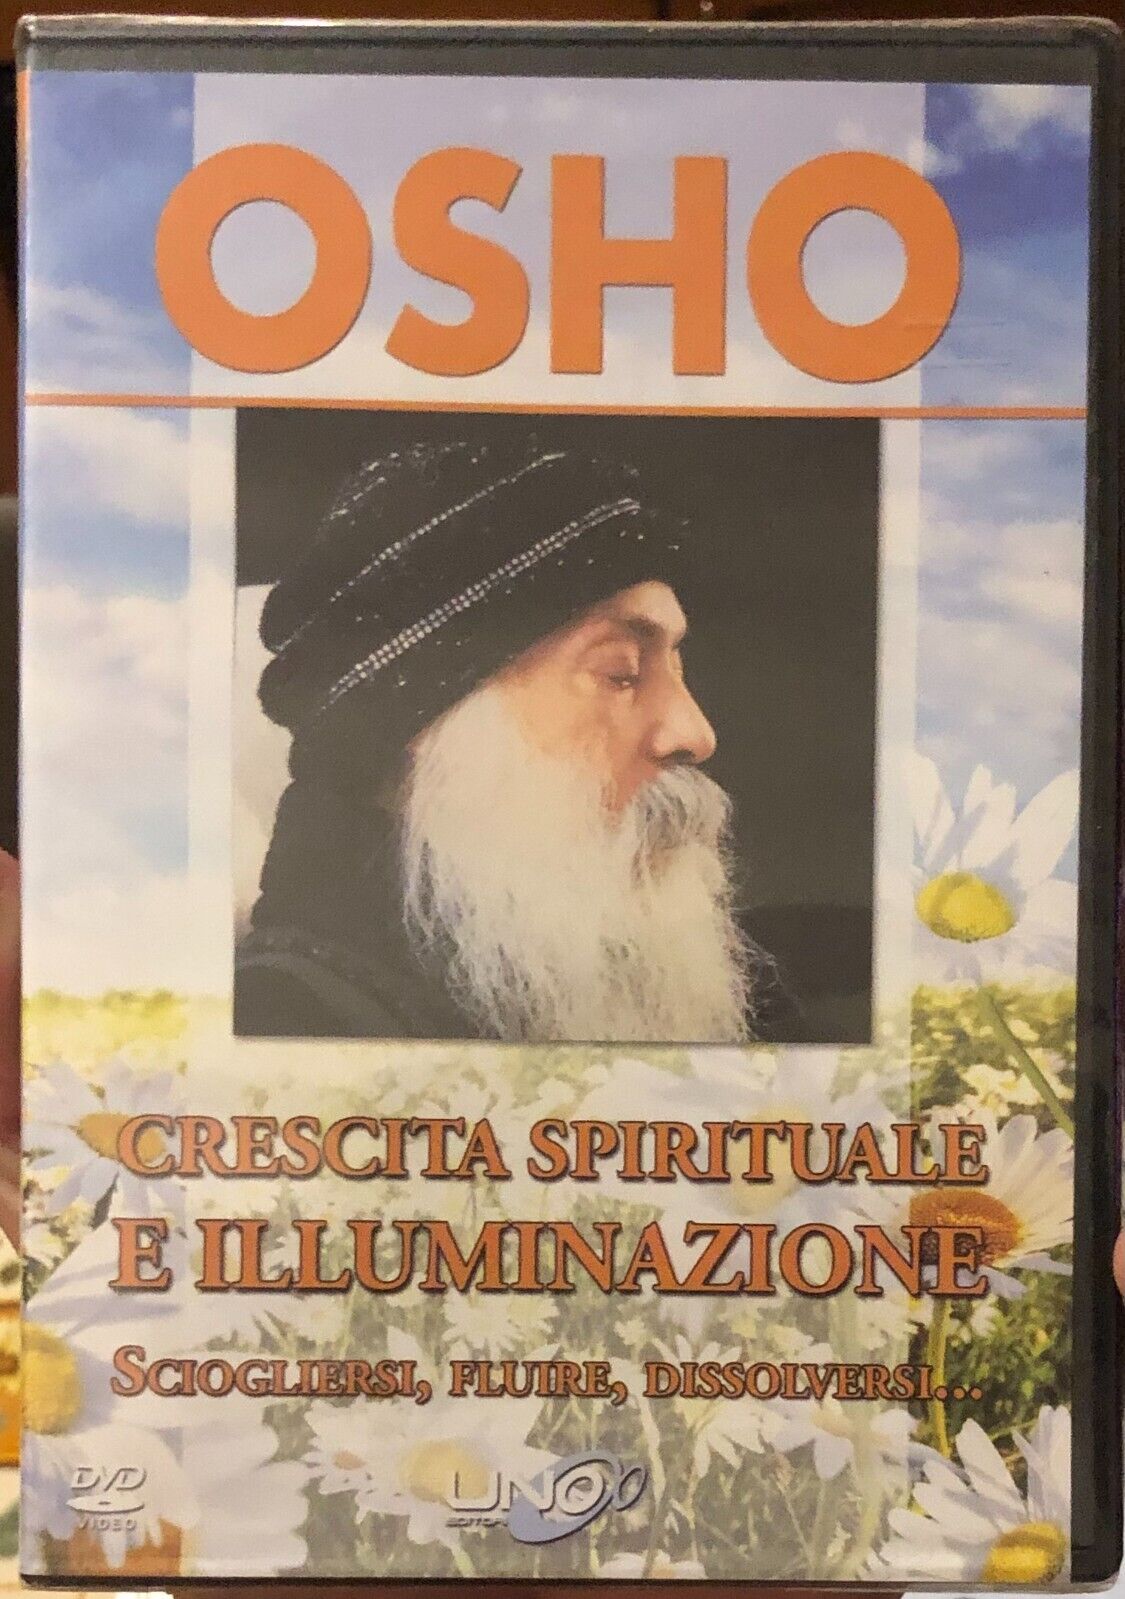  Crescita Spirituale e Illuminazione (Video Discorso in DVD) di Osho, 2014, U